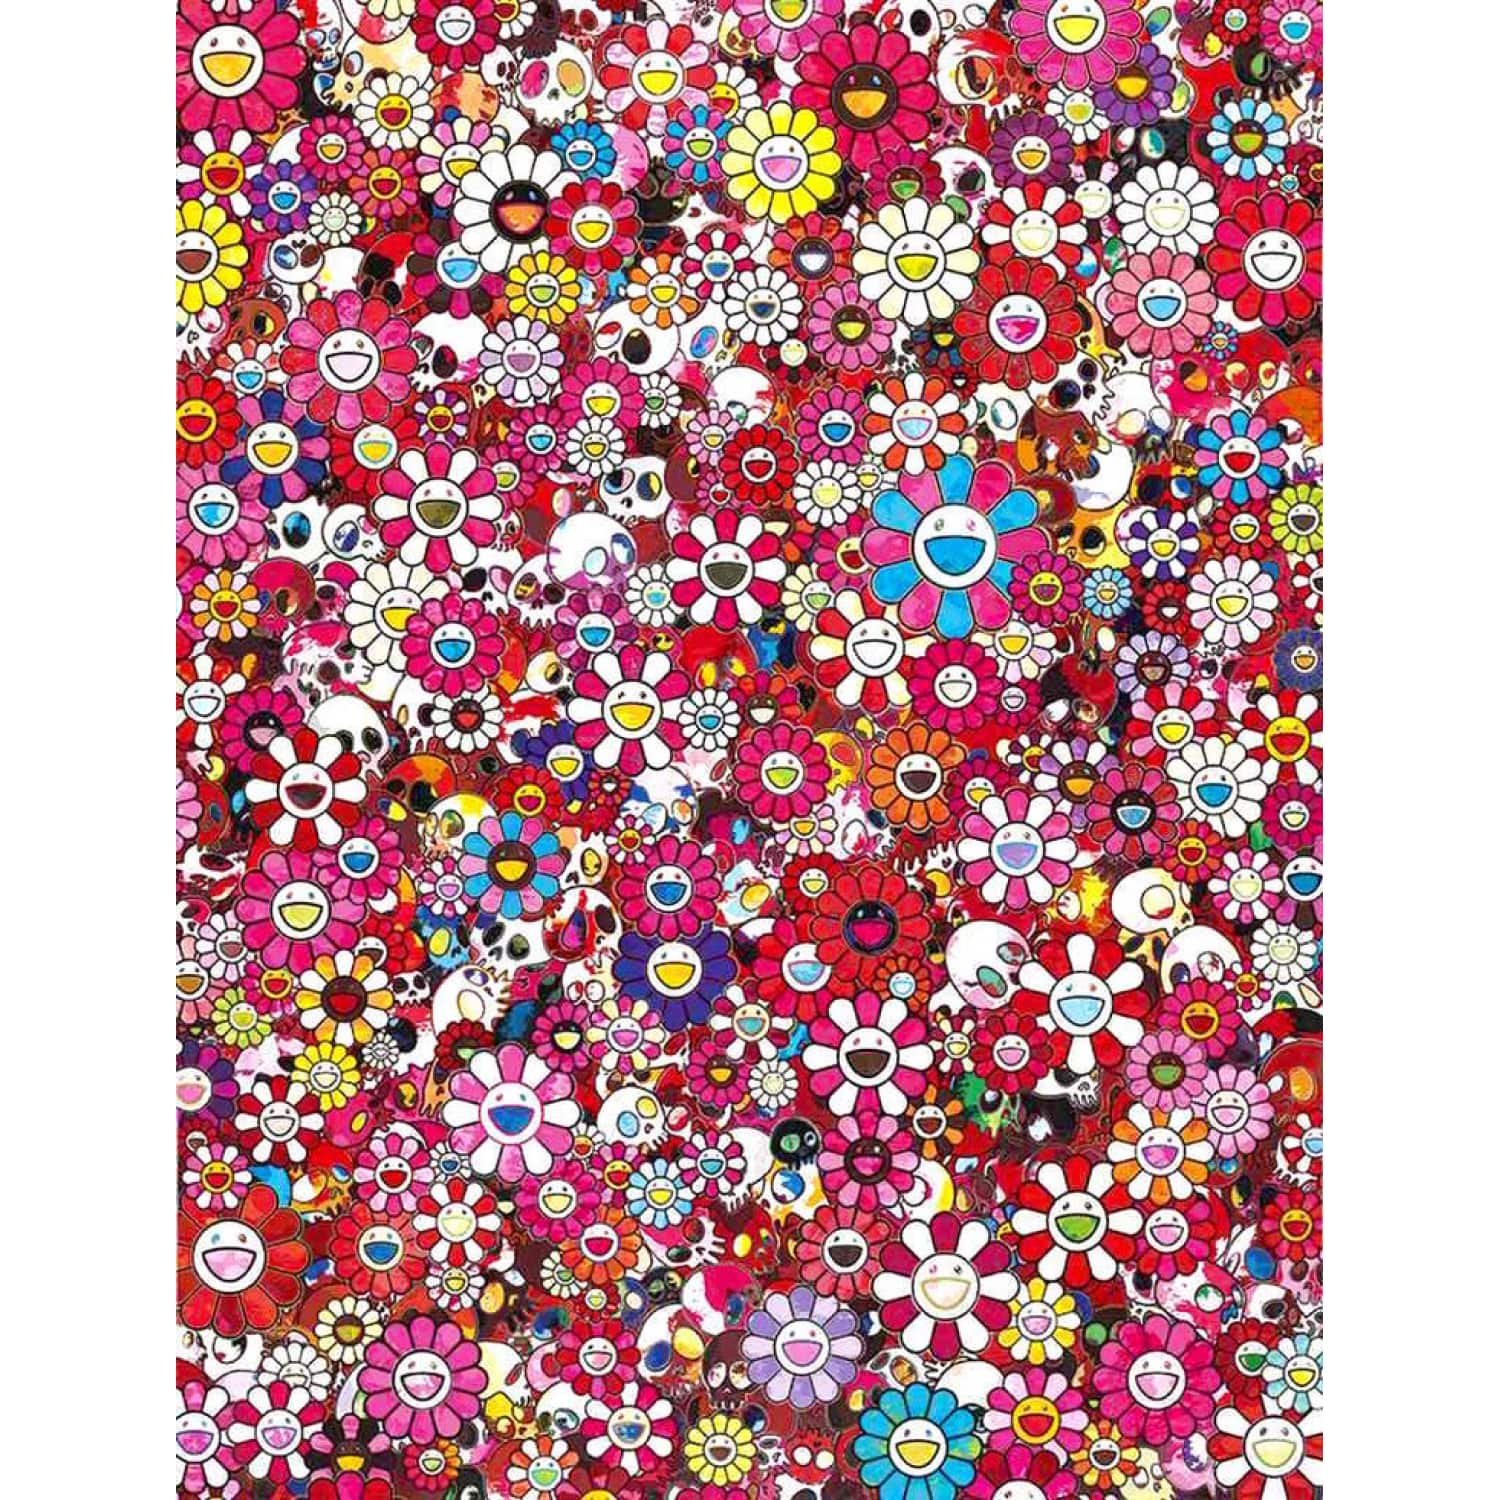 Print 108 Bonnō Murakami.Flowers from Takashi Murakami - Dope! Gallery